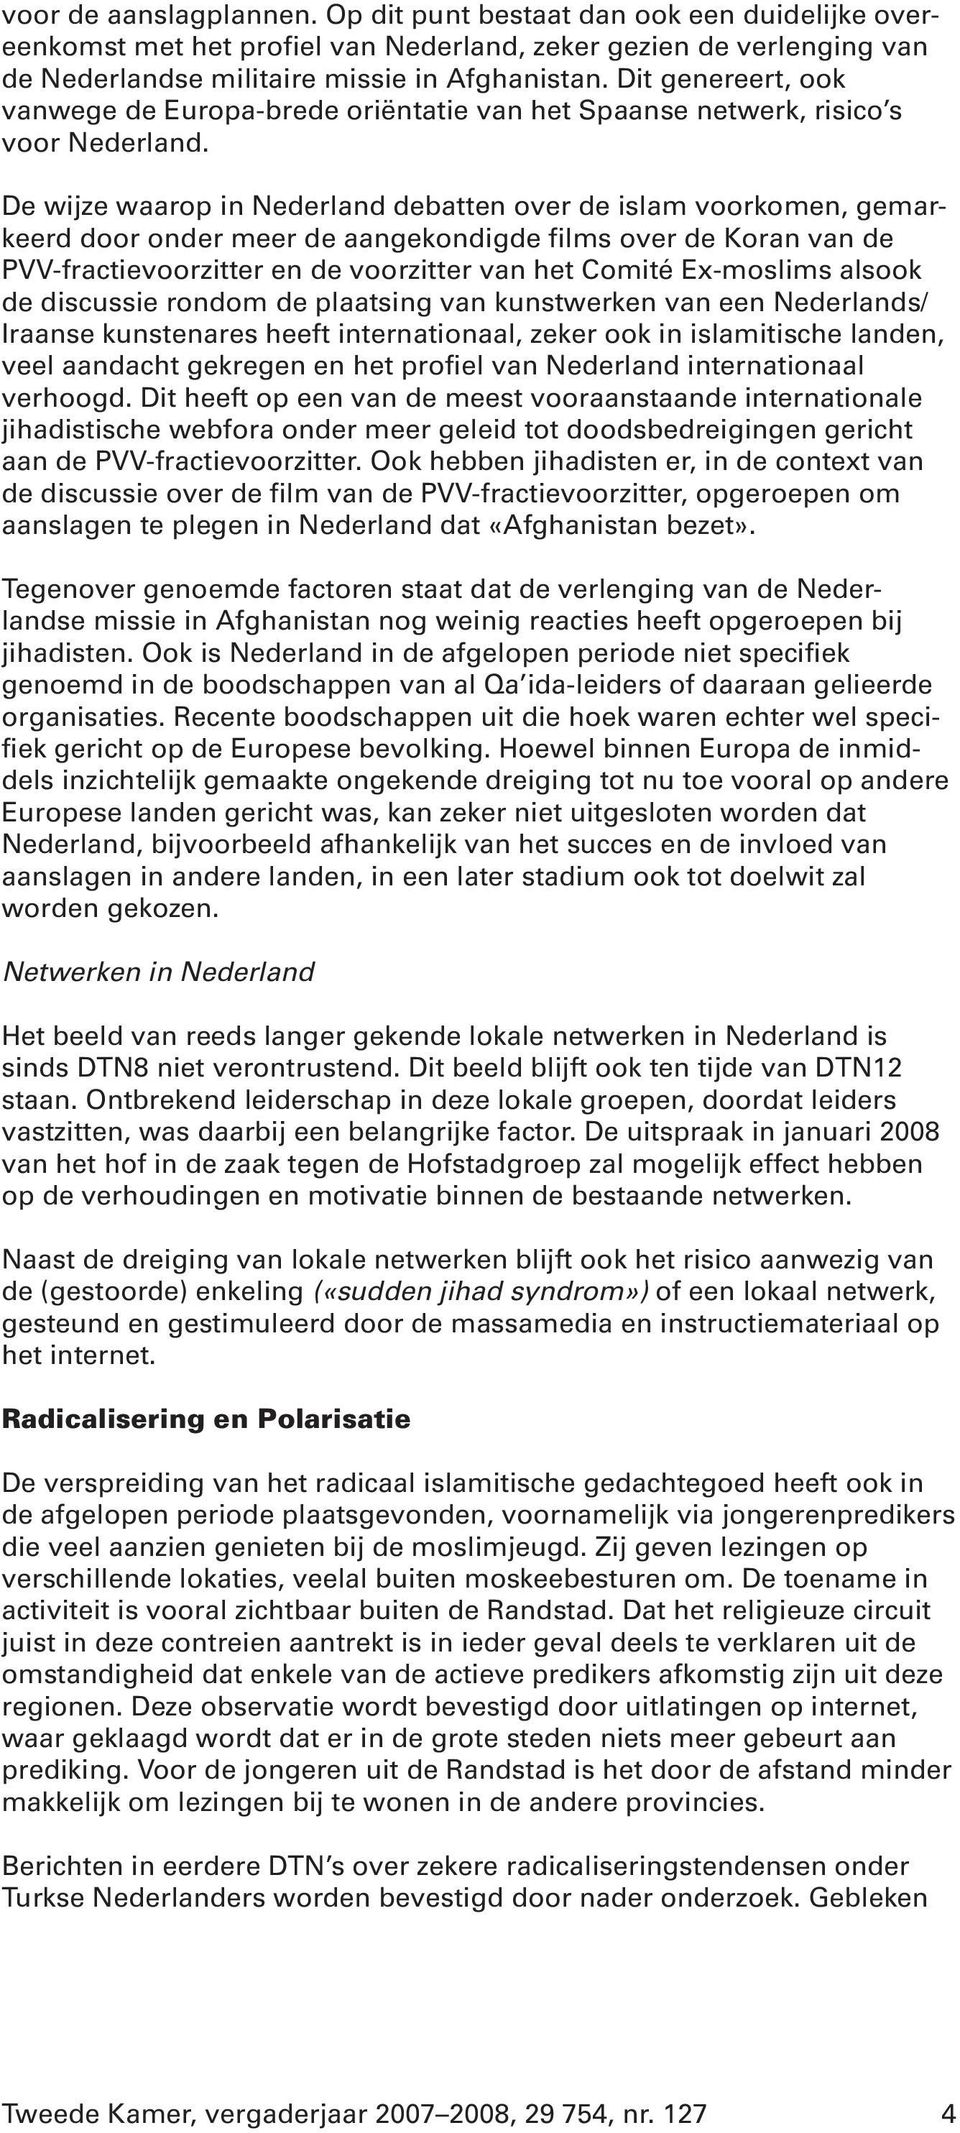 De wijze waarop in Nederland debatten over de islam voorkomen, gemarkeerd door onder meer de aangekondigde films over de Koran van de PVV-fractievoorzitter en de voorzitter van het Comité Ex-moslims